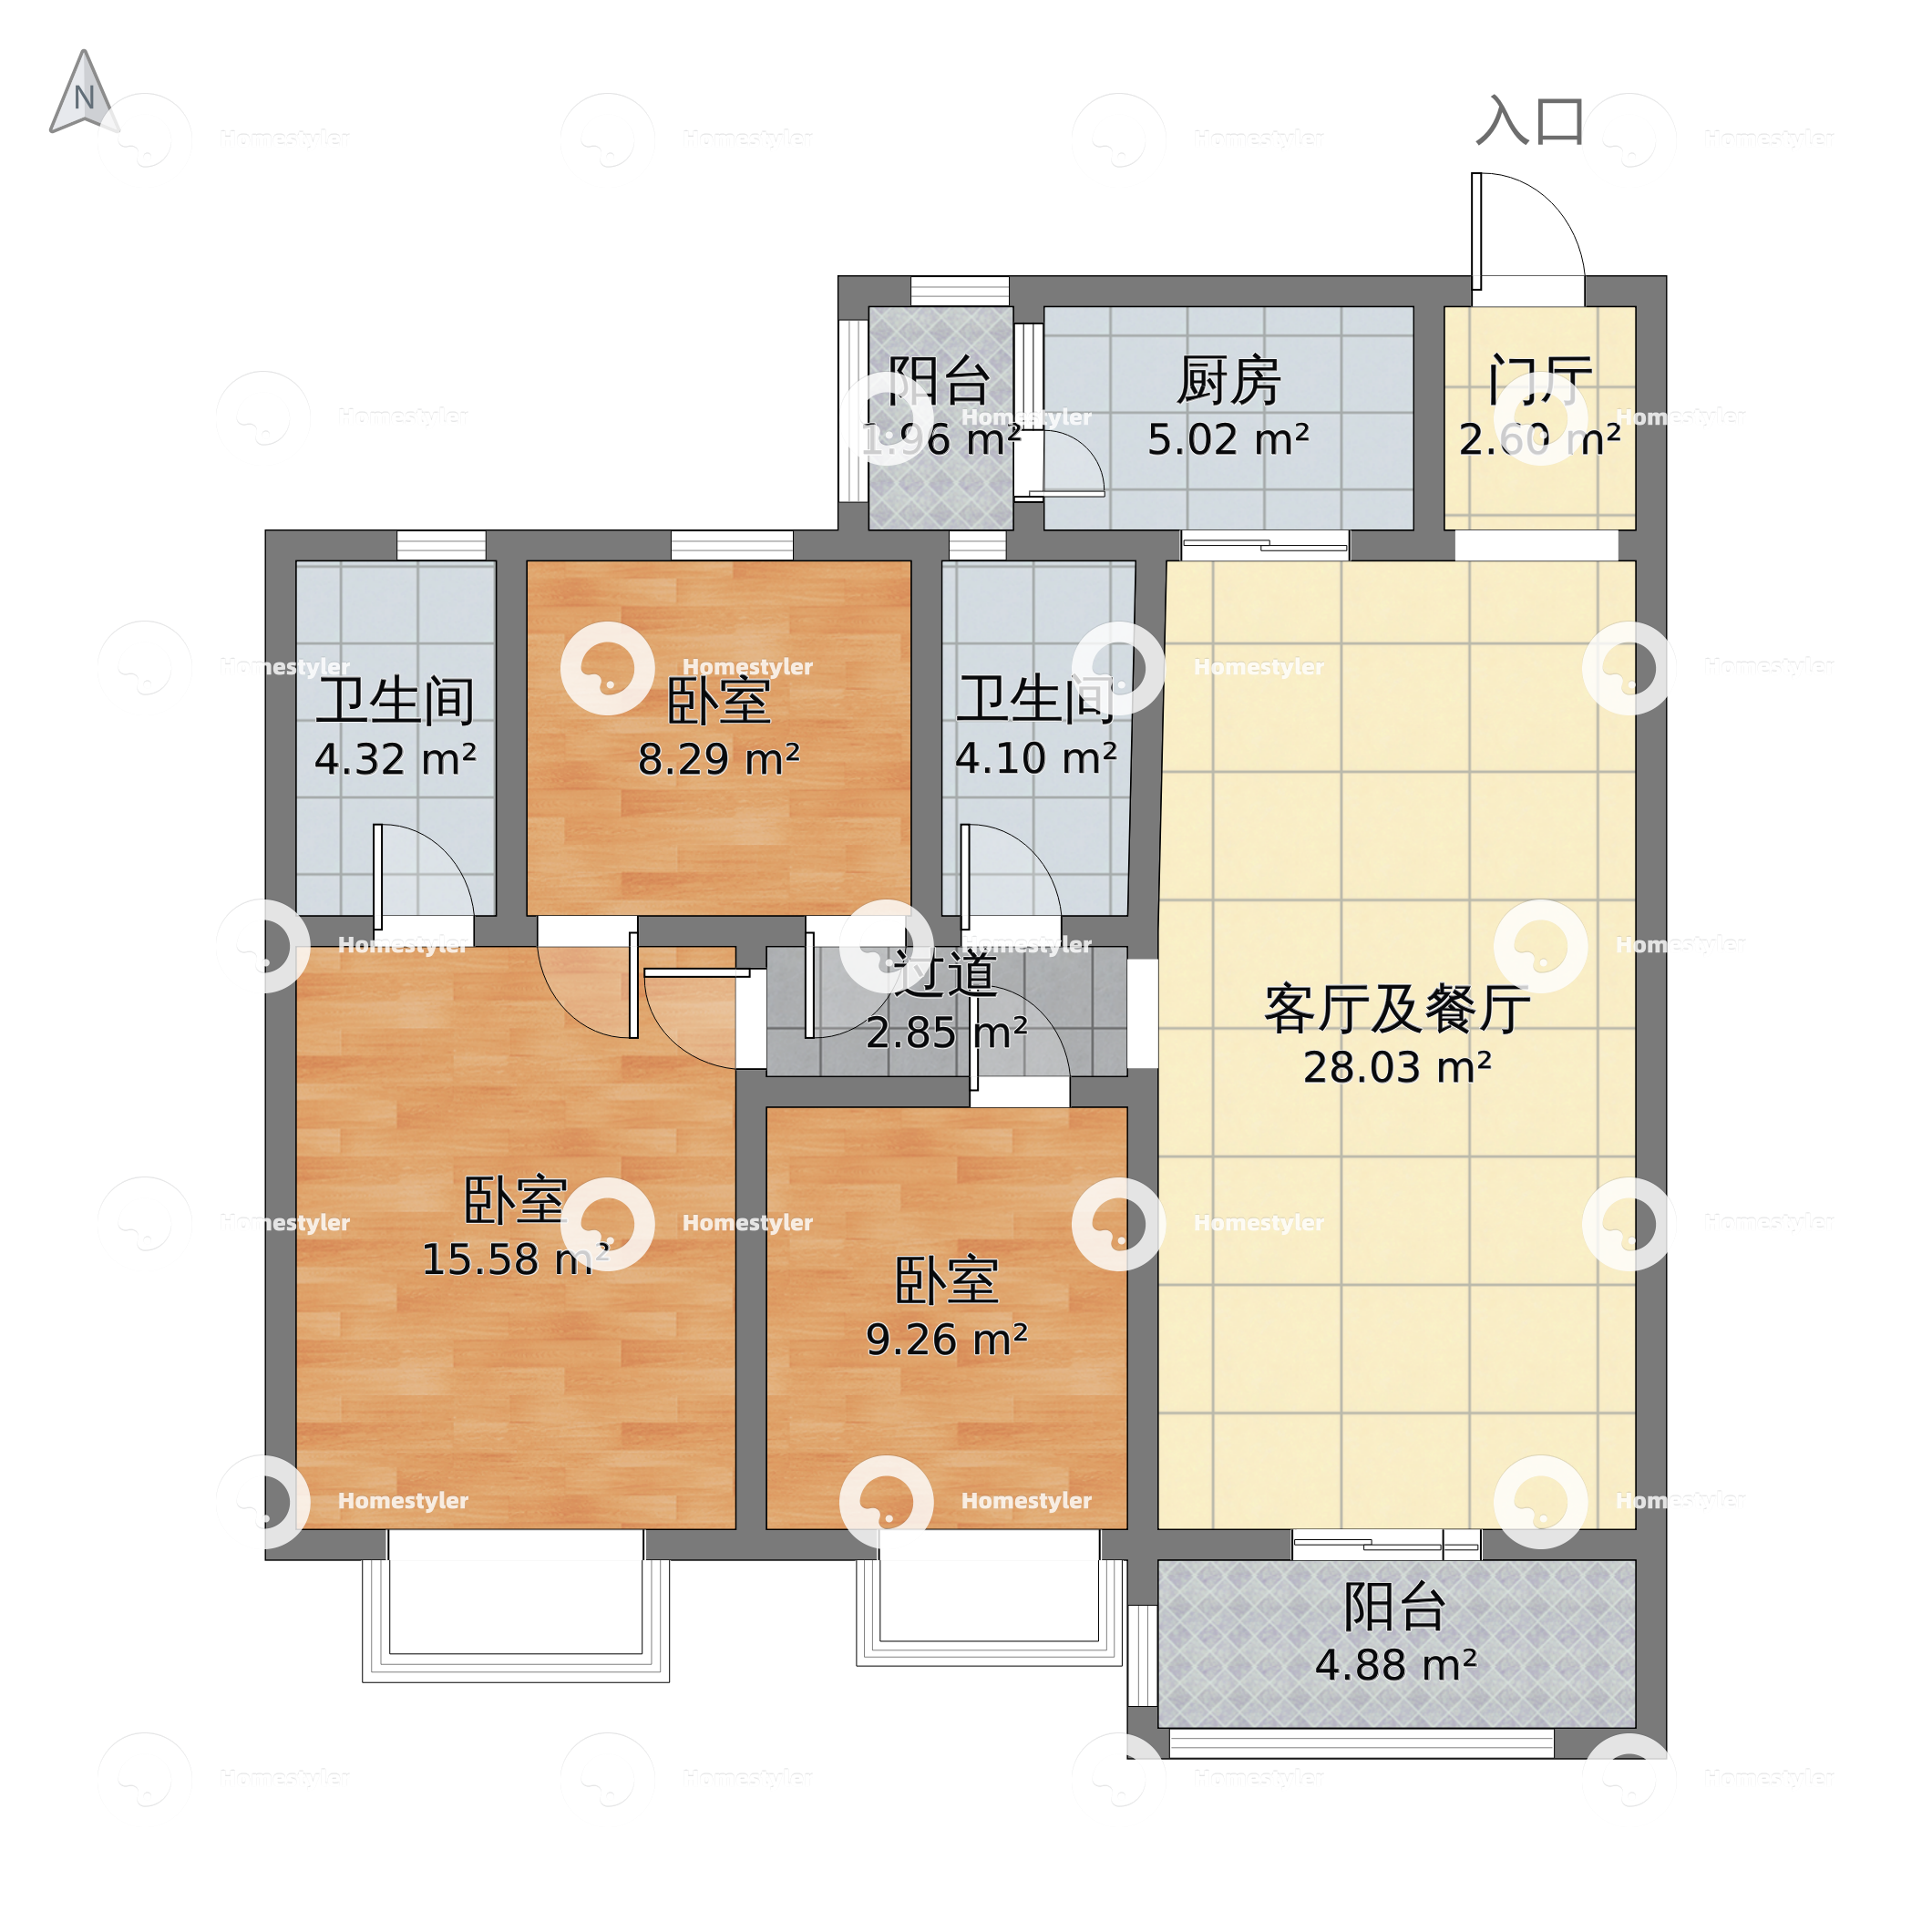 河南省郑州市金水区 金水世纪城3室2厅2卫 116m²-v2户型图 - 小区户型图 -躺平设计家